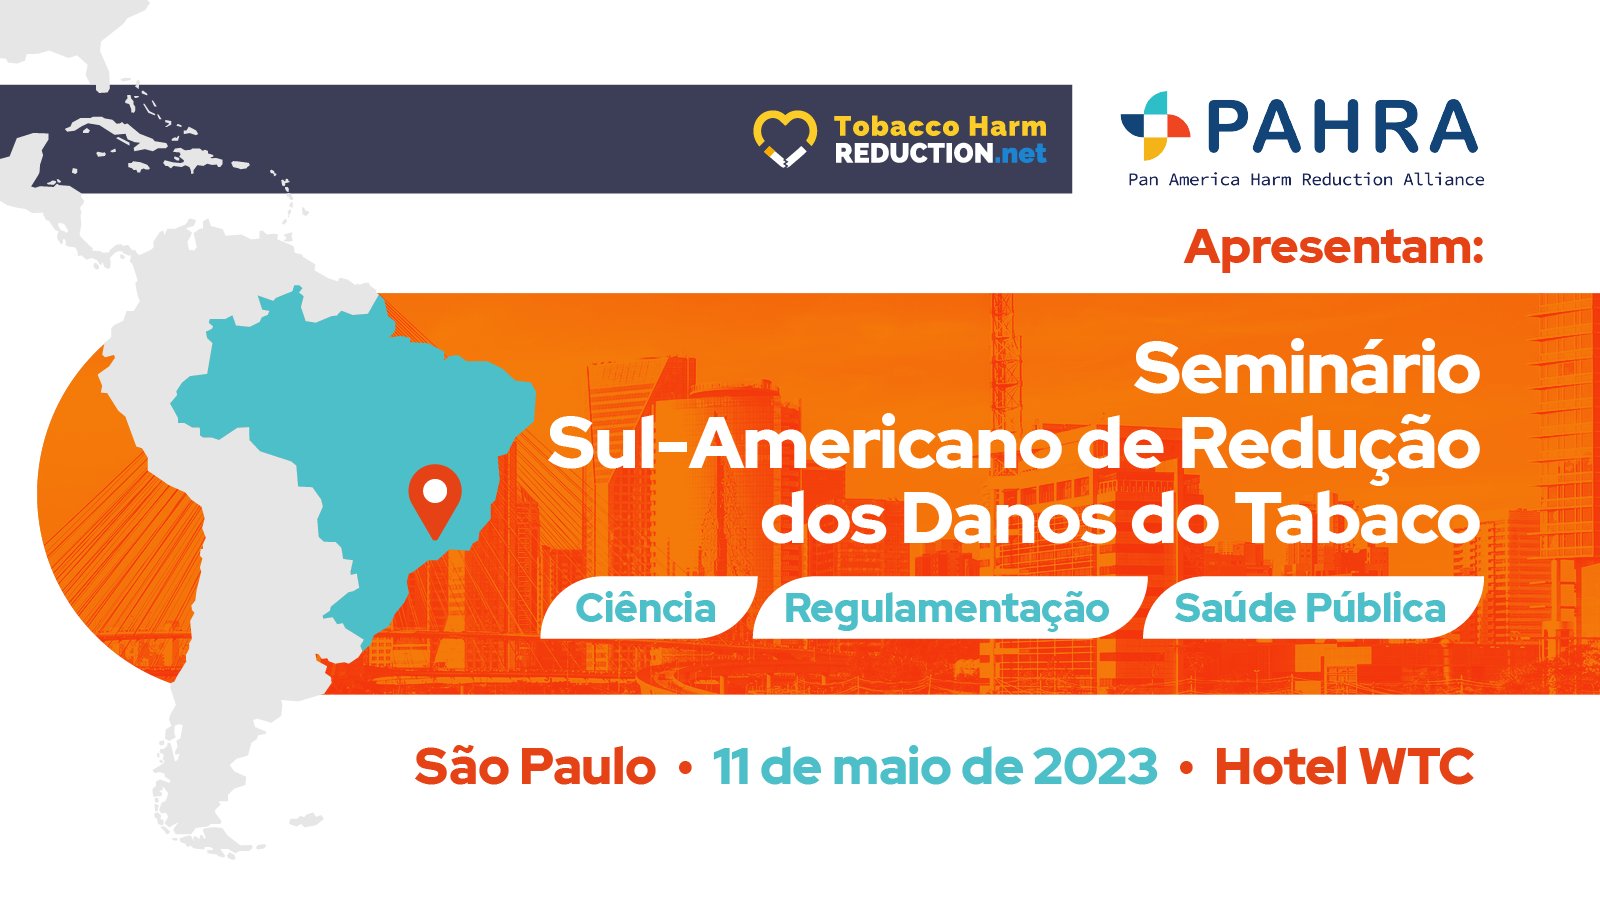 El Seminario Sudamericano sobre  Reducción de Daños del Tabaco  (THR), realizado en São Paulo el 11 de mayo de 2023, reunió a oradores experimentados de campos como la salud pública, la academia y el gobierno para discutir temas científicos clave relacionados con THR.